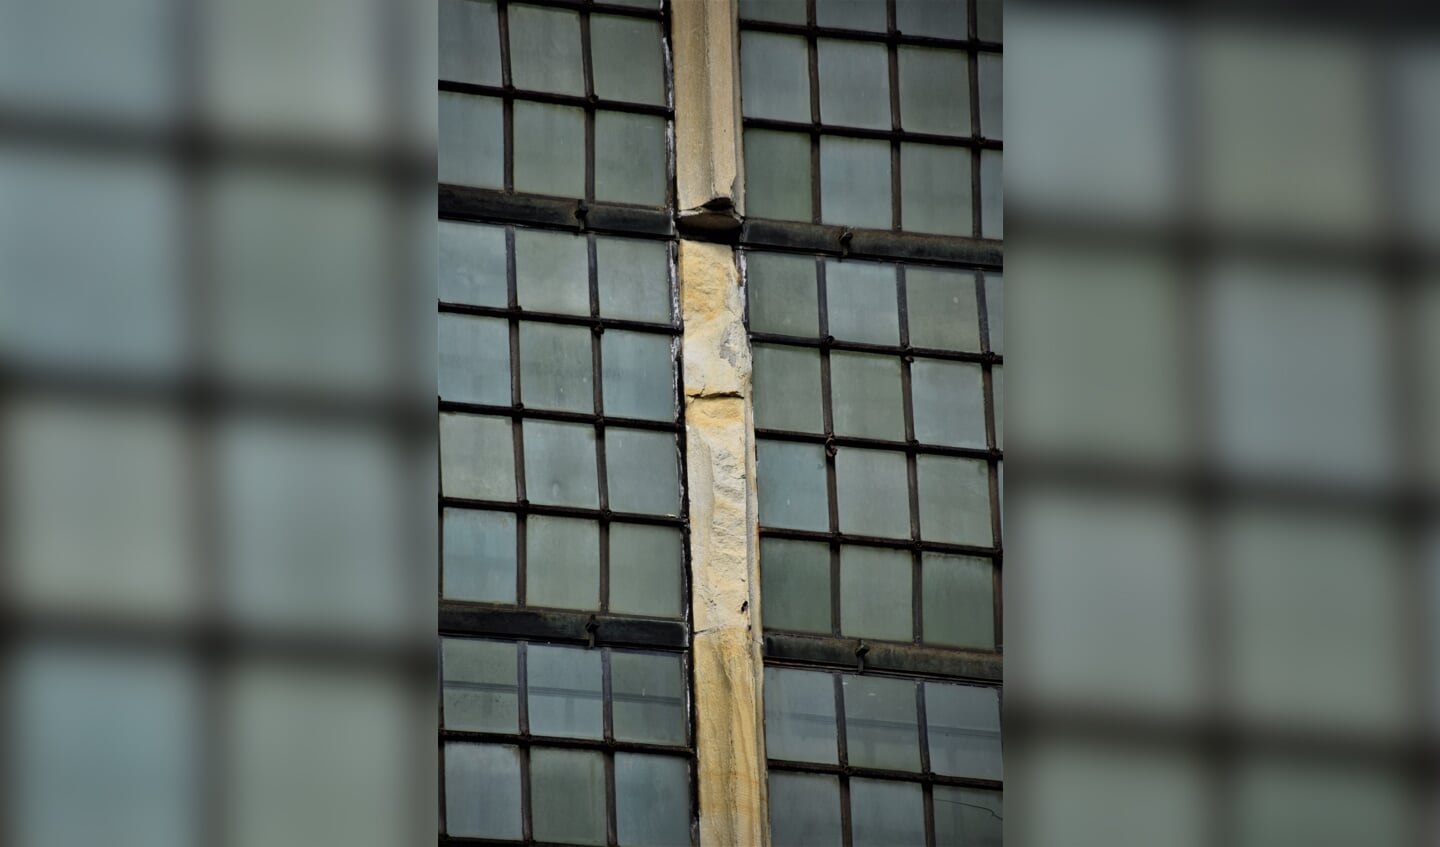 Het zandsteen van de ramen is door de jaren heen ernstig verweerd en aangetast. Foto: PR